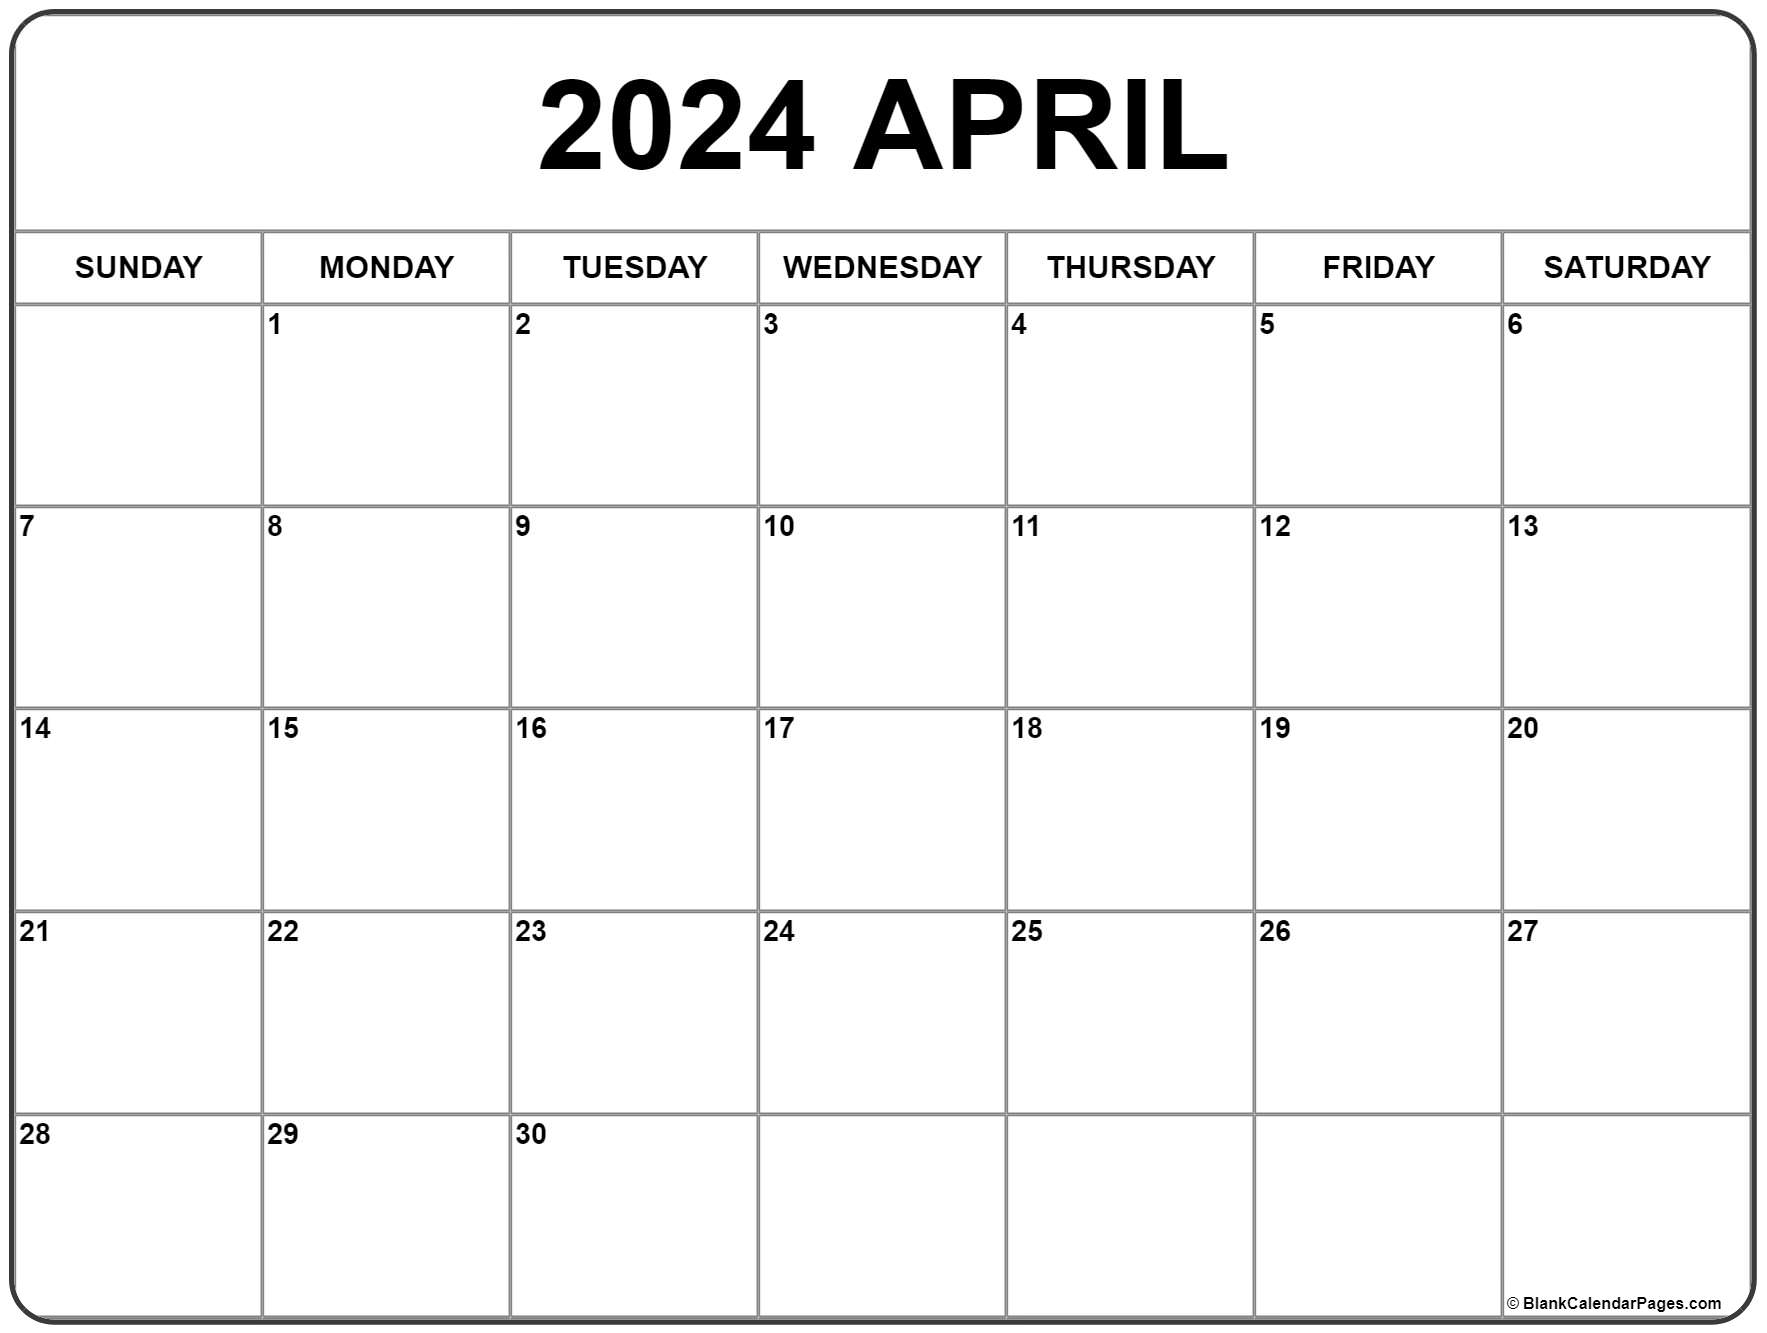 April 2024 Calendar | Free Printable Calendar for Free Printable Calendar April 2024